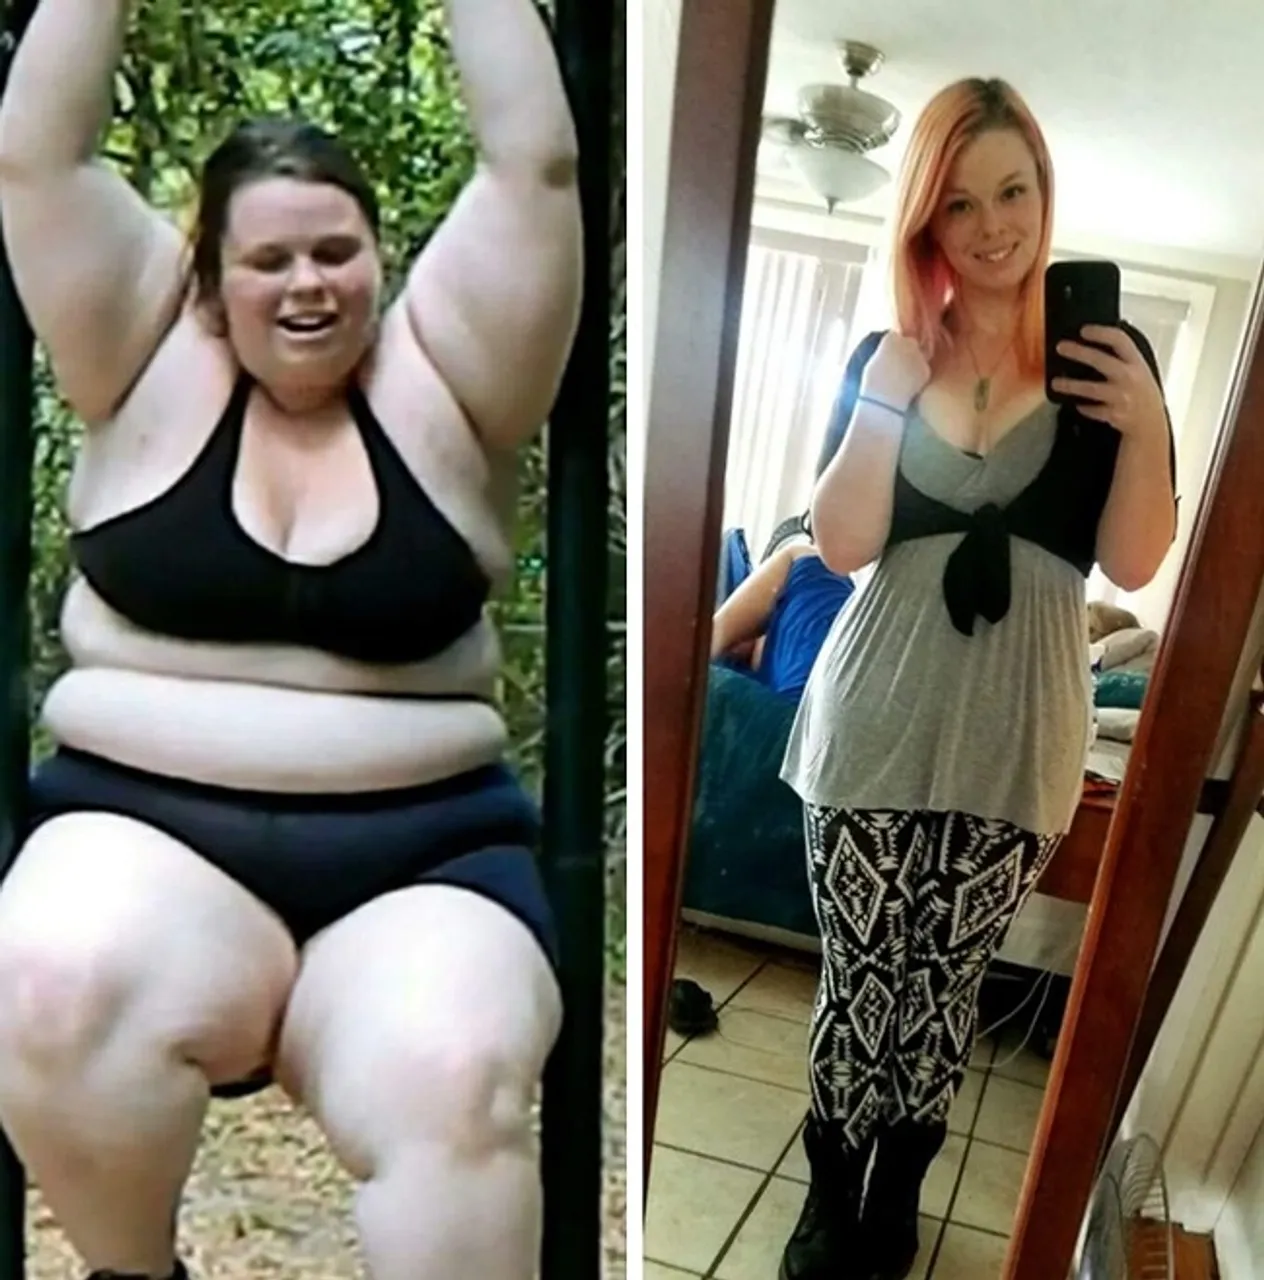 "Izgubila sam 85 kilograma u dvije godine"